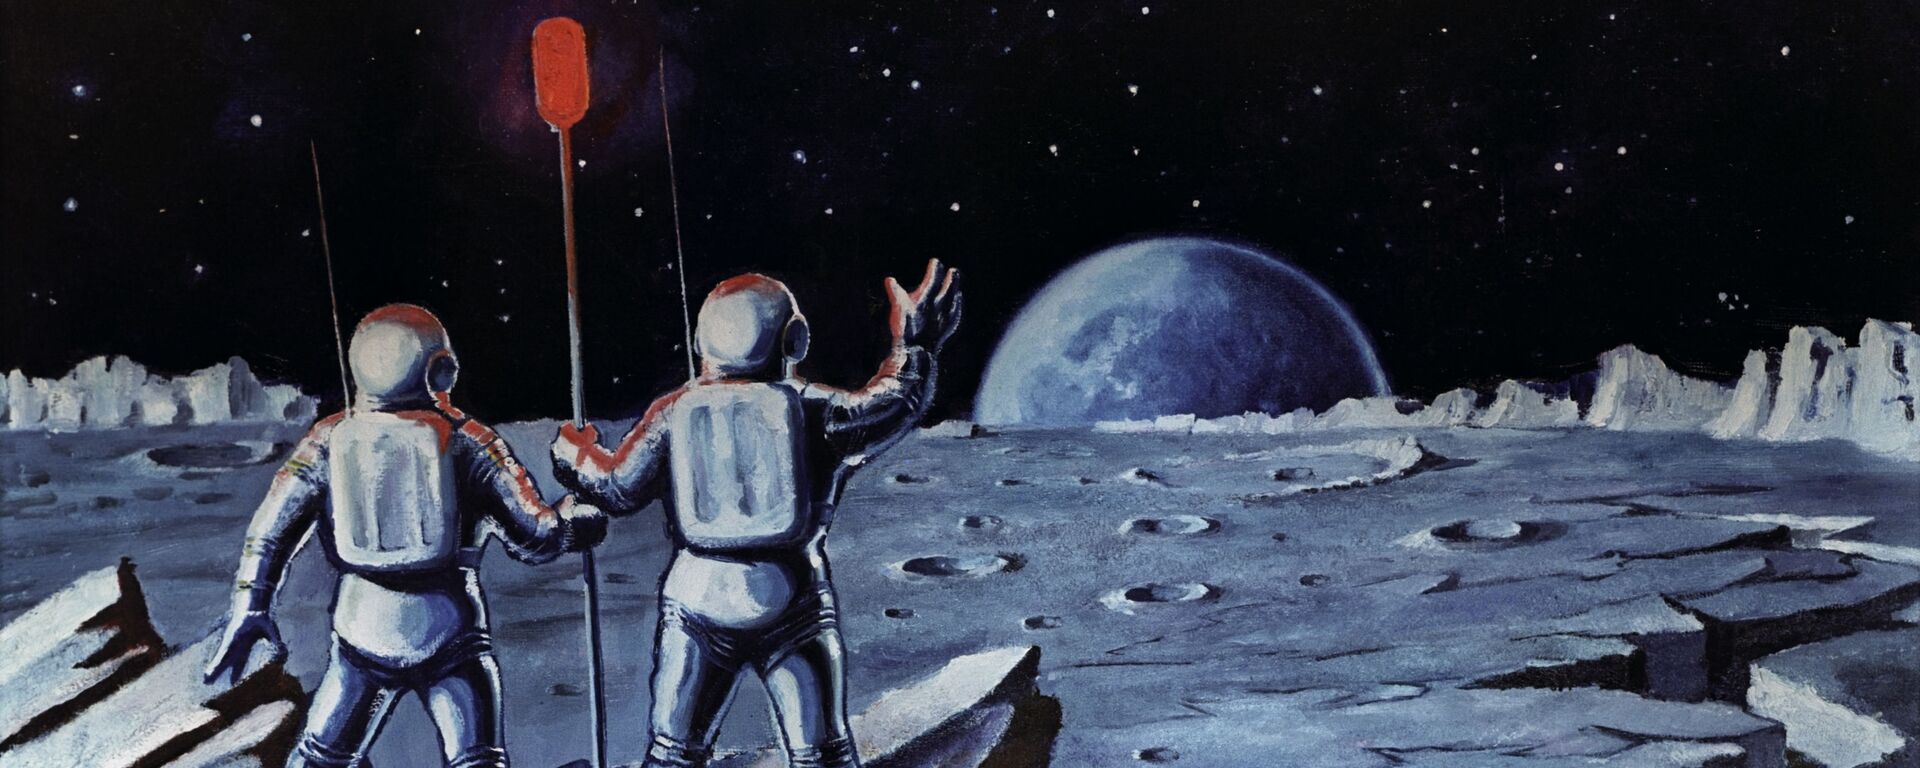 Човек на Месецу - Sputnik Србија, 1920, 11.10.2019